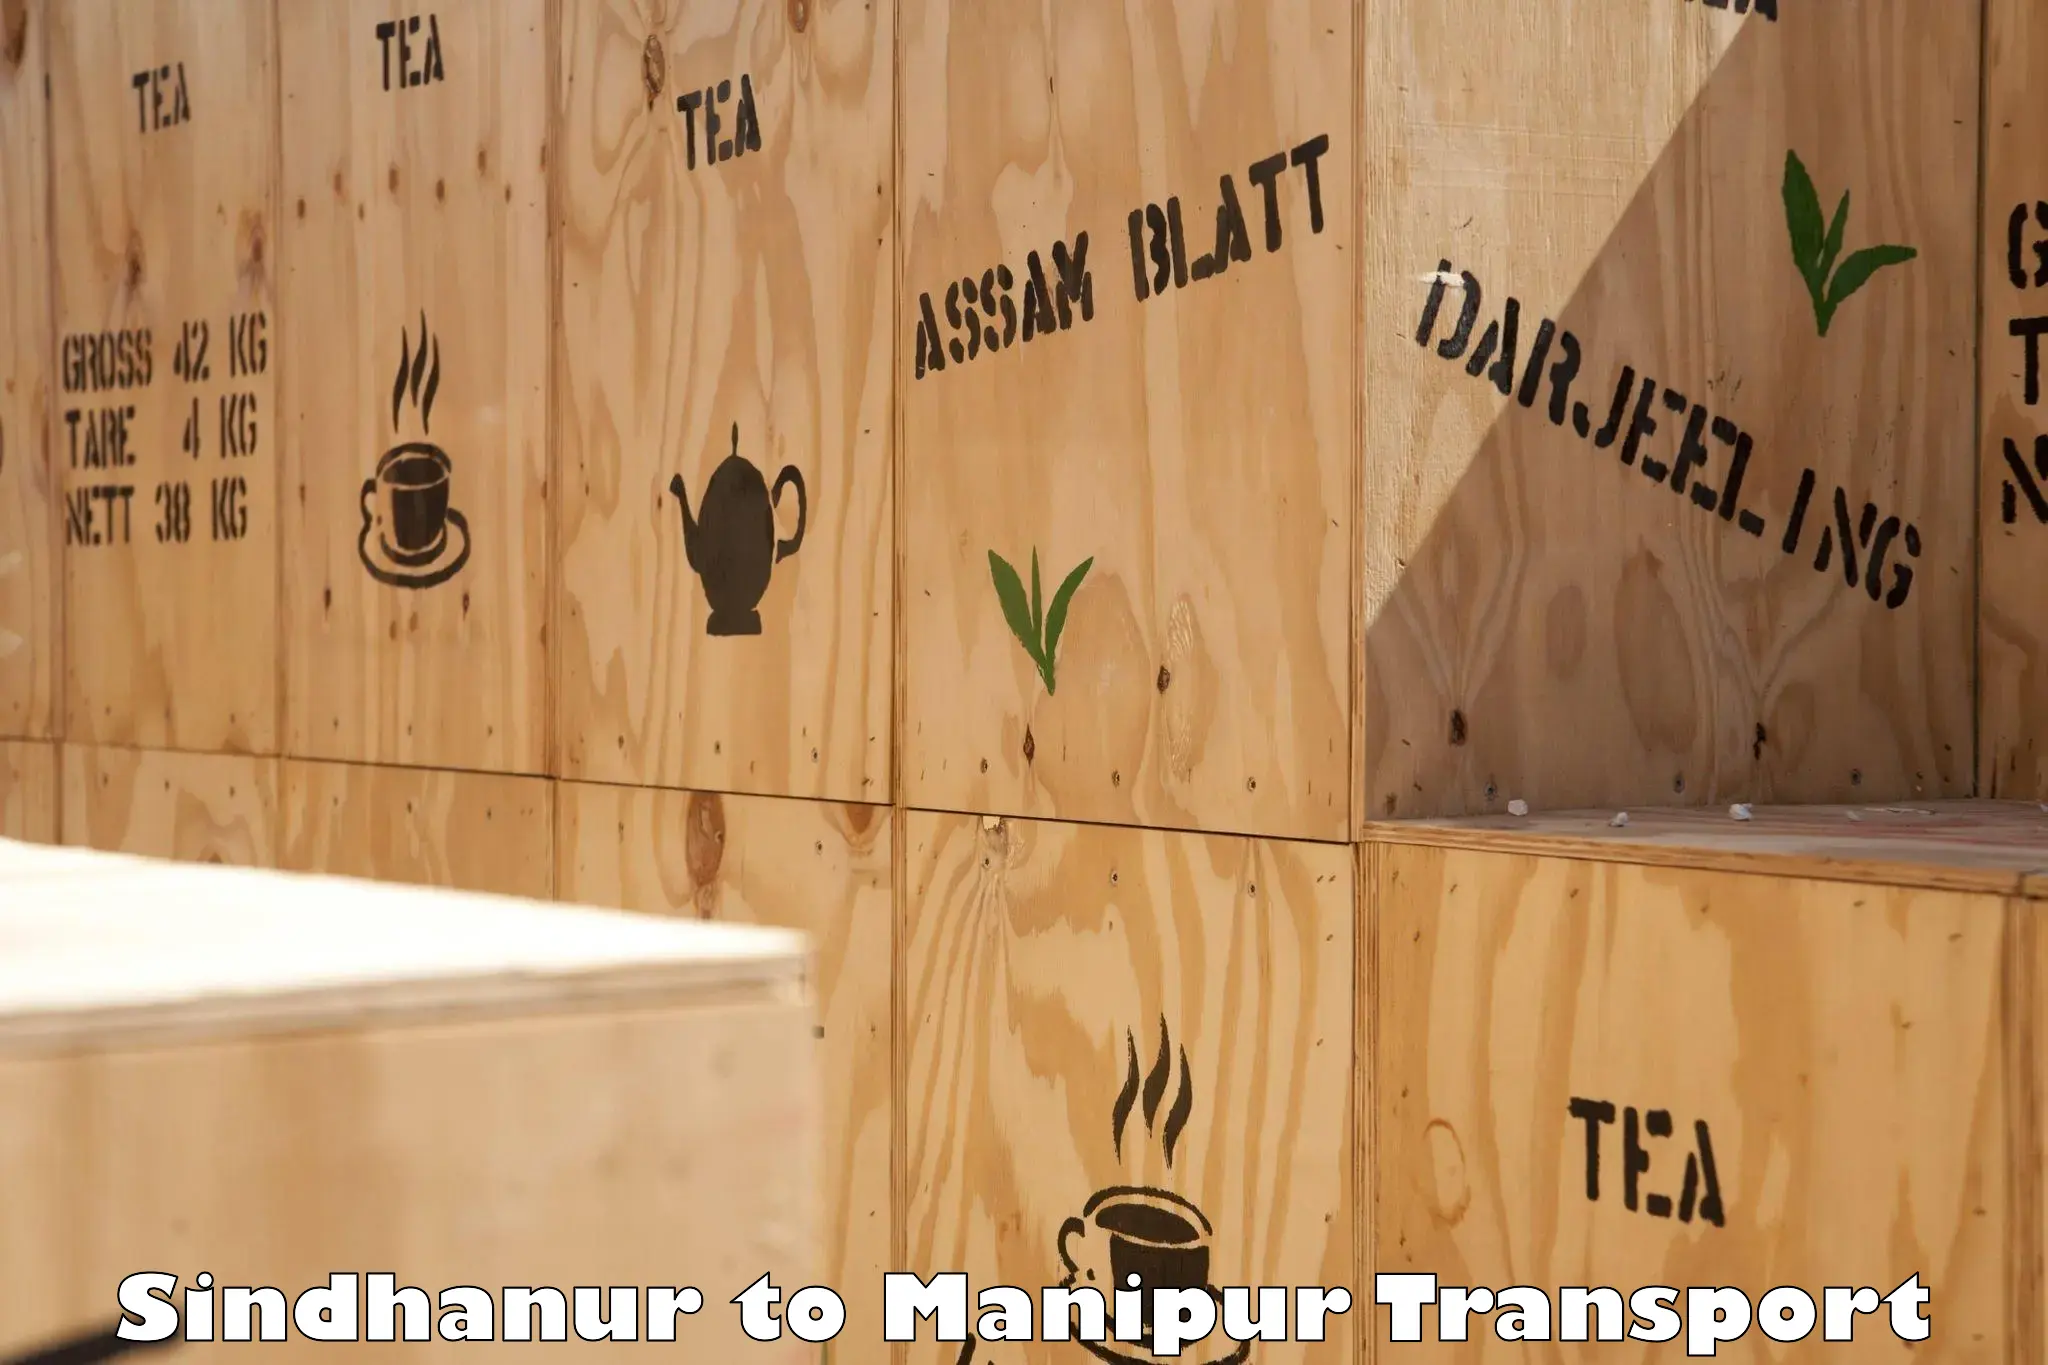 Cargo transport services Sindhanur to Churachandpur